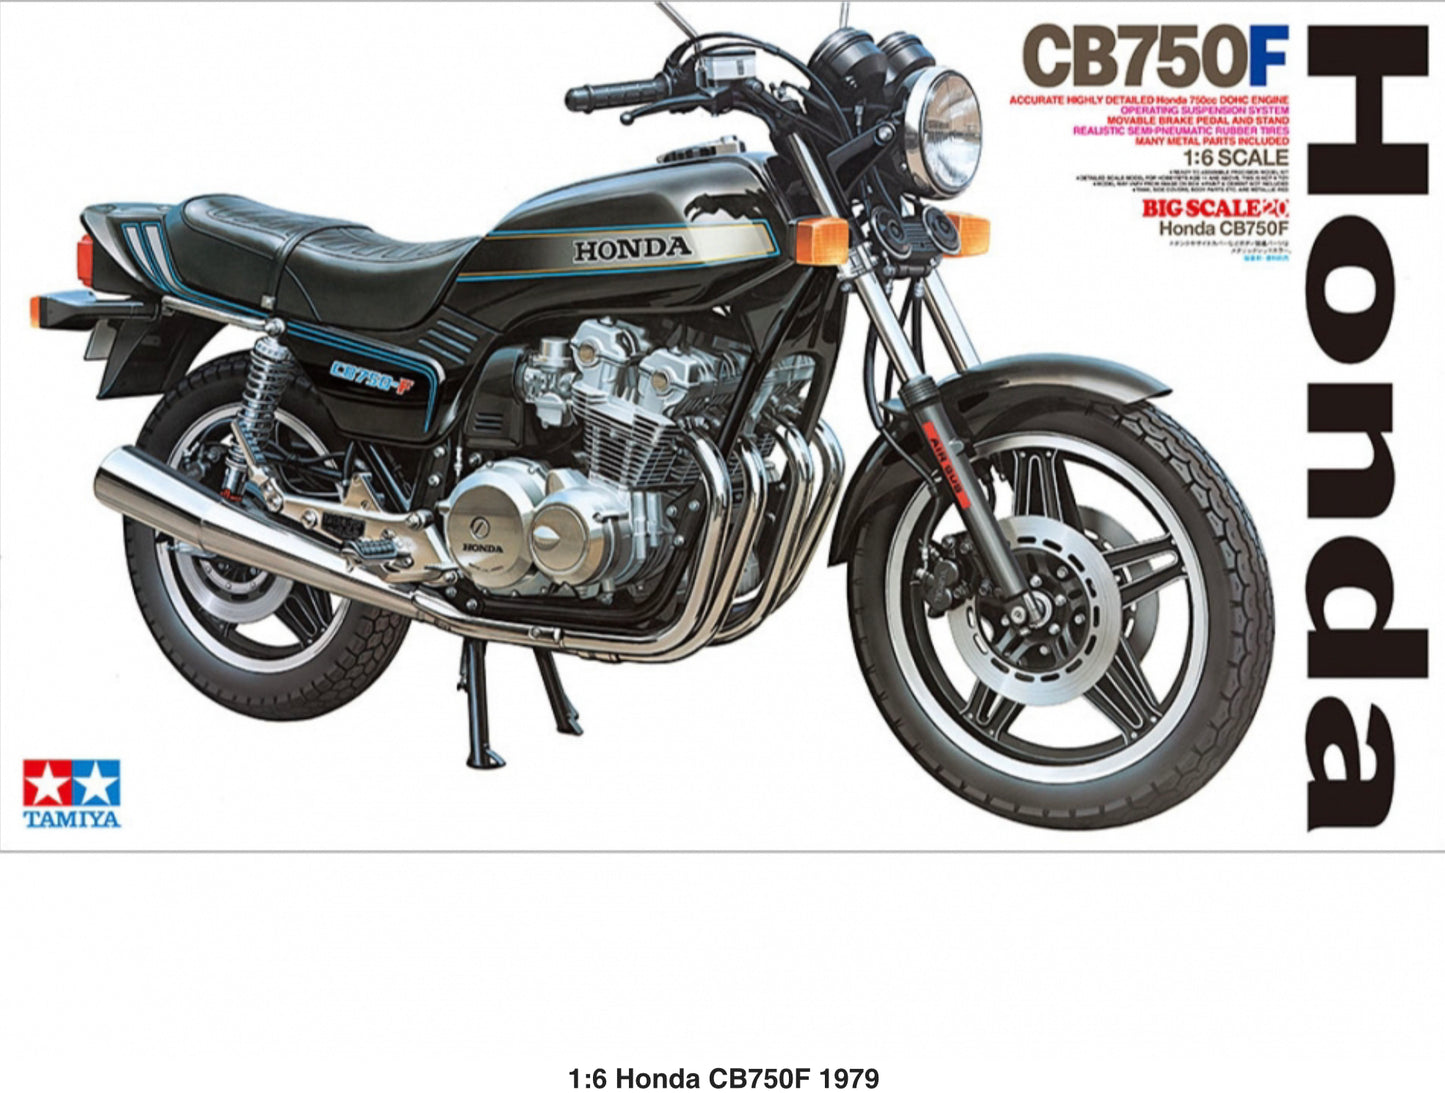 HONDA CB750F 1979